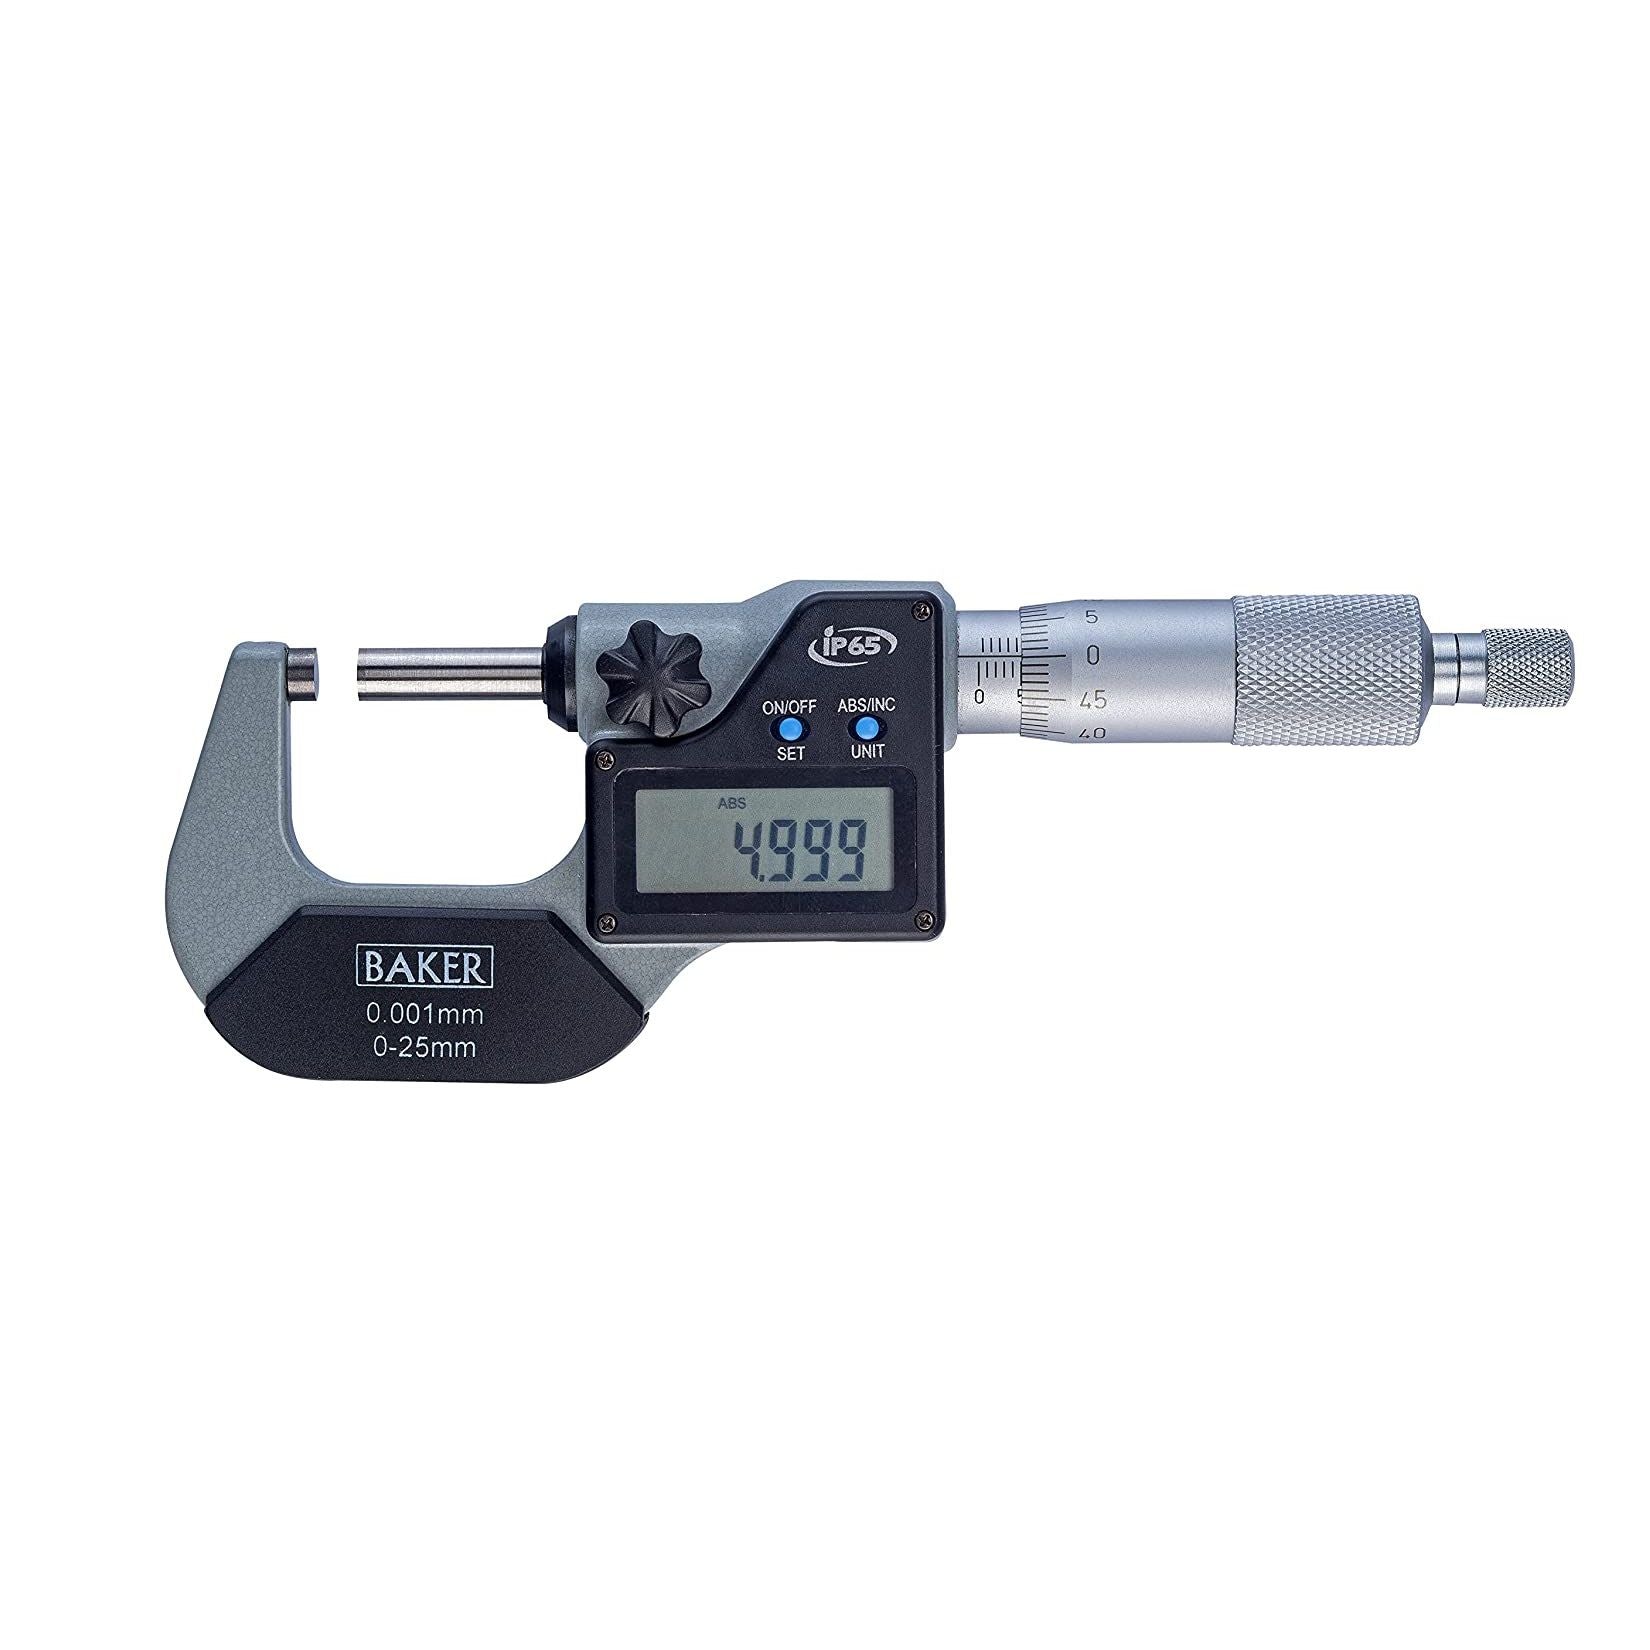 Baker Digital External Micrometer DMM 0-50mm